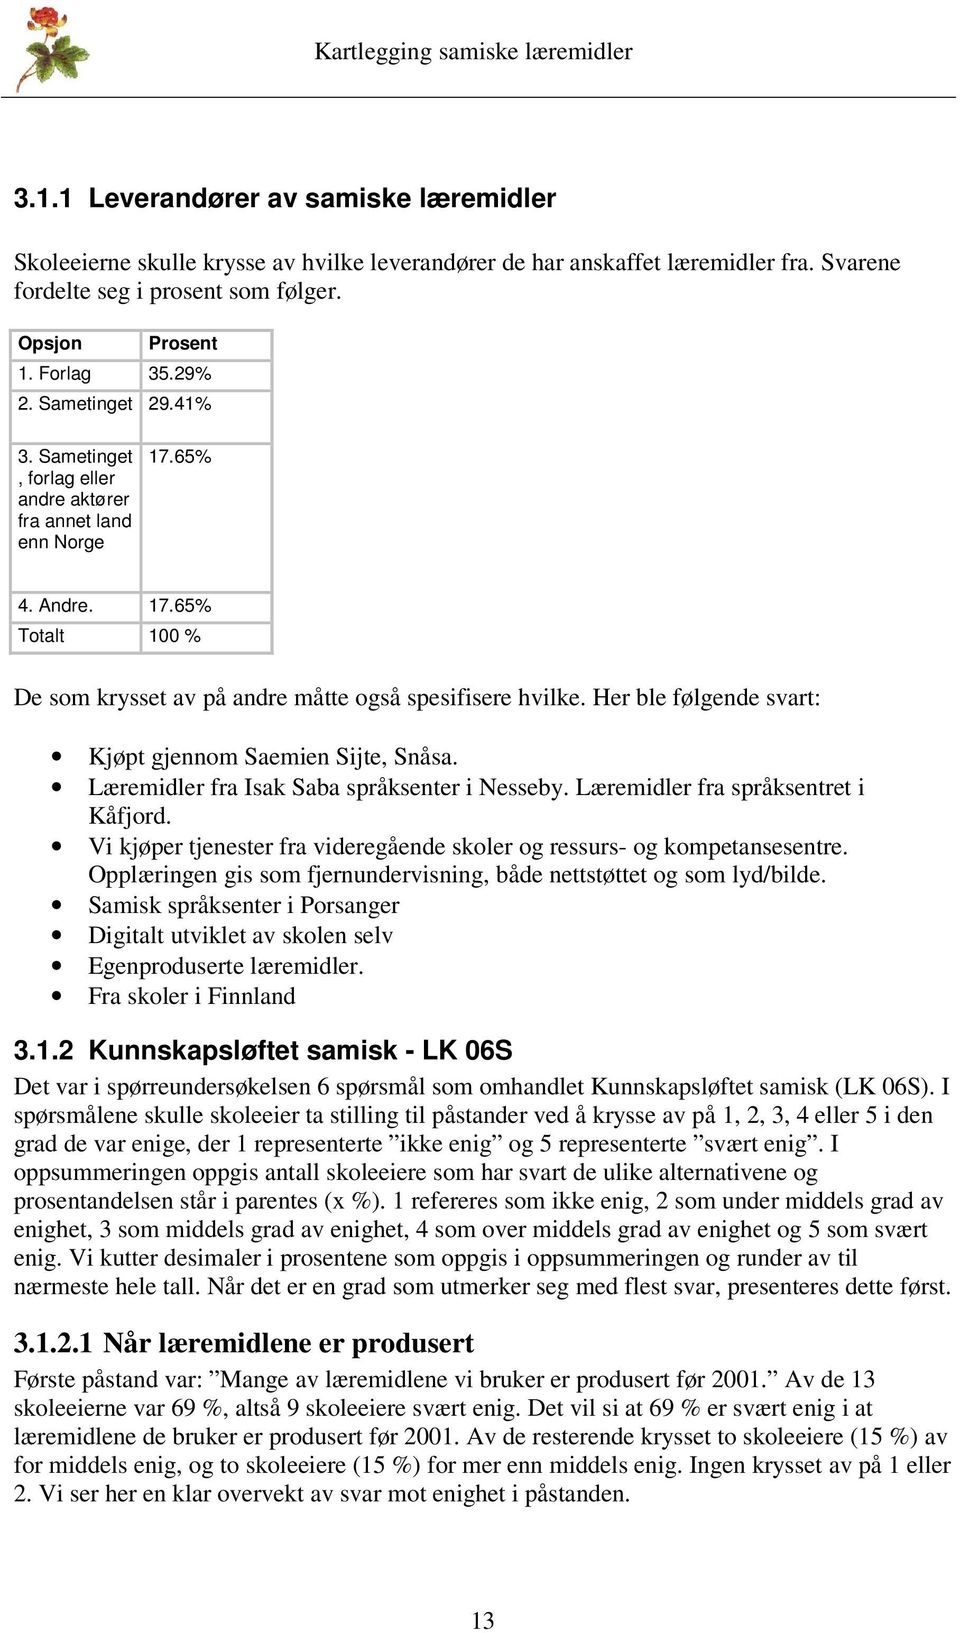 Her ble følgende svart: Kjøpt gjennom Saemien Sijte, Snåsa. Læremidler fra Isak Saba språksenter i Nesseby. Læremidler fra språksentret i Kåfjord.